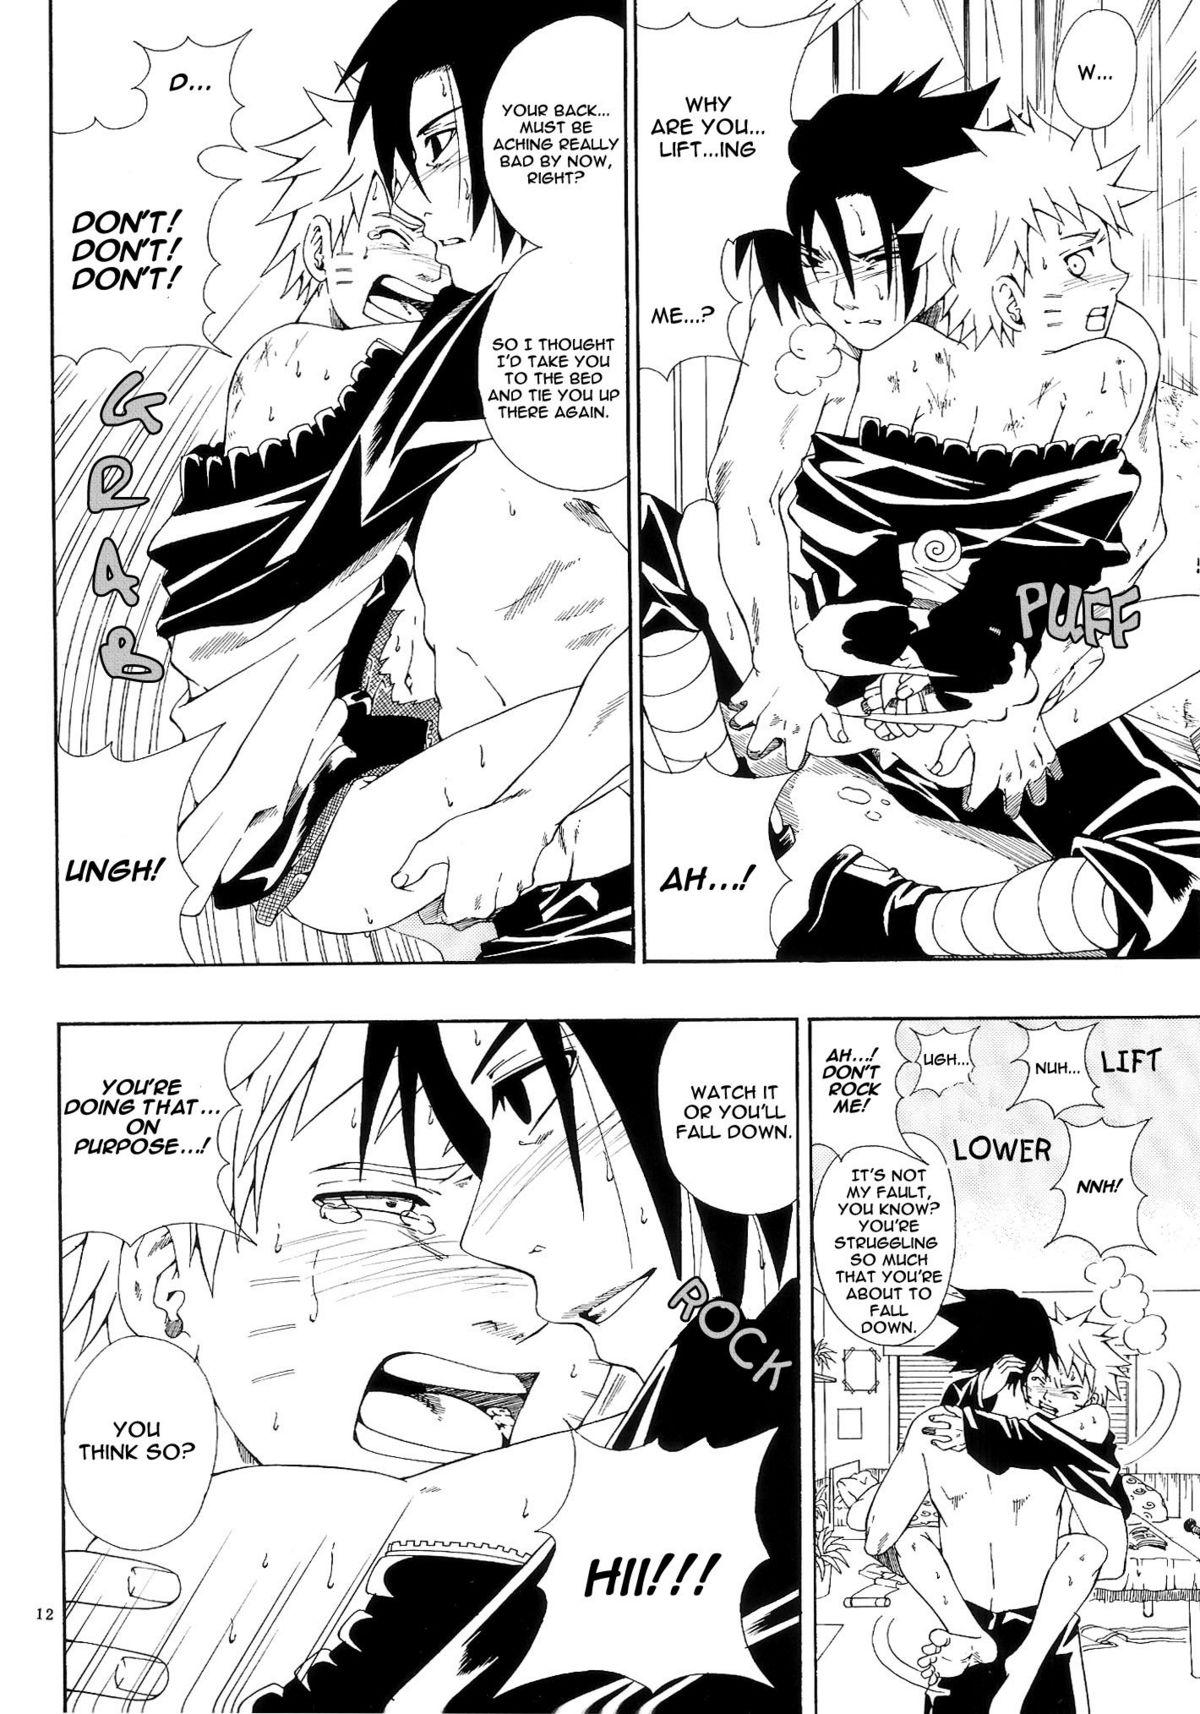 ERO ERO²: Volume 1.5  (NARUTO) [Sasuke X Naruto] YAOI -ENG- page 11 full